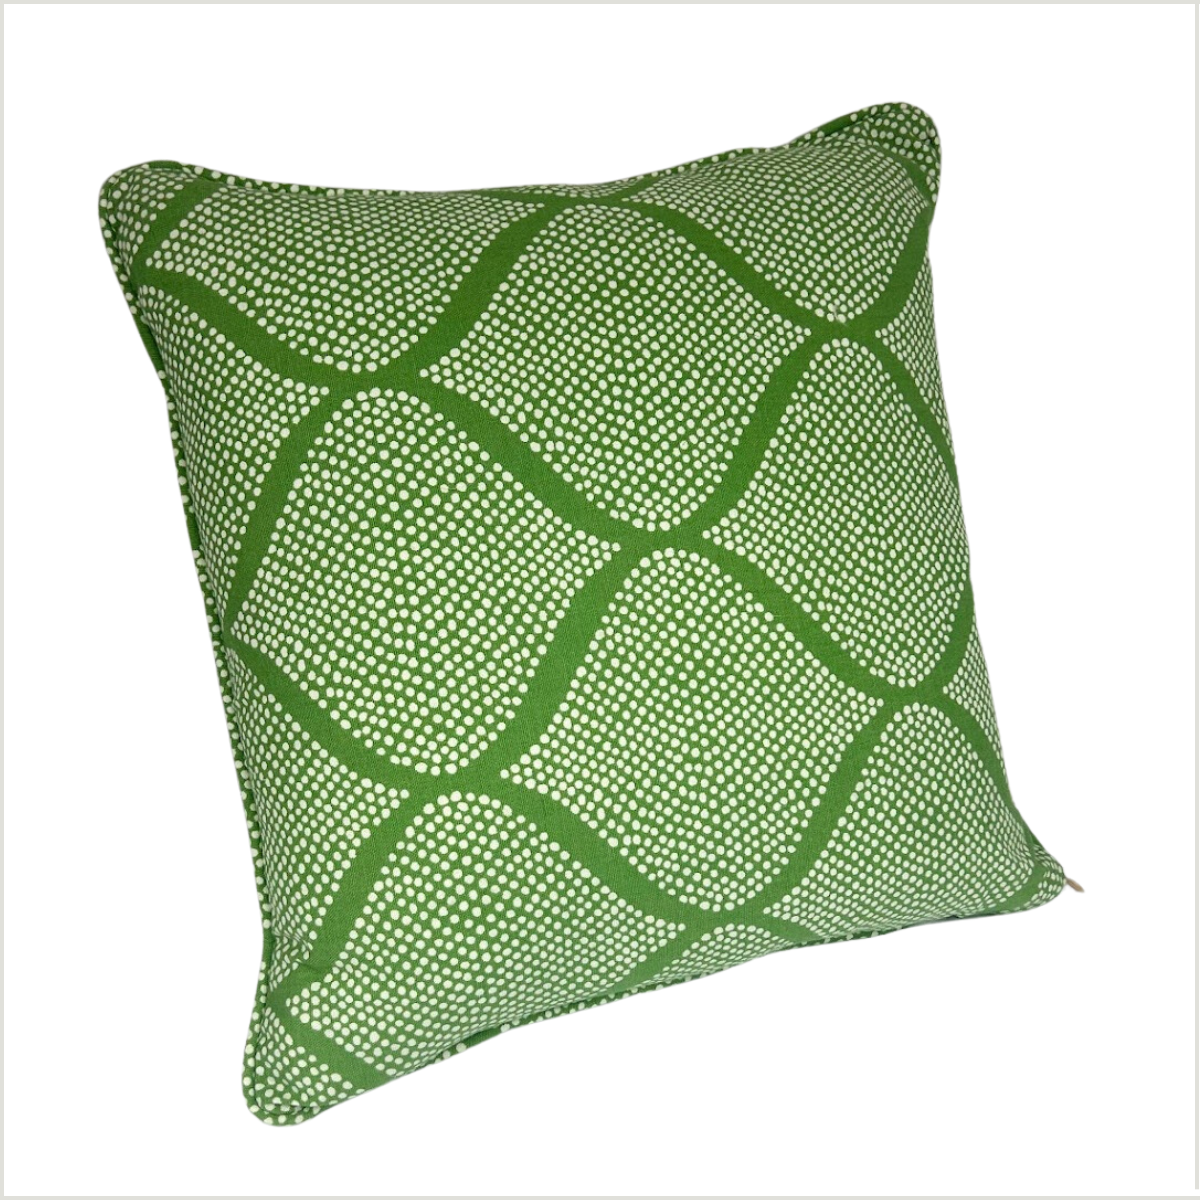 Fez Grass Green 18” Square Pillow